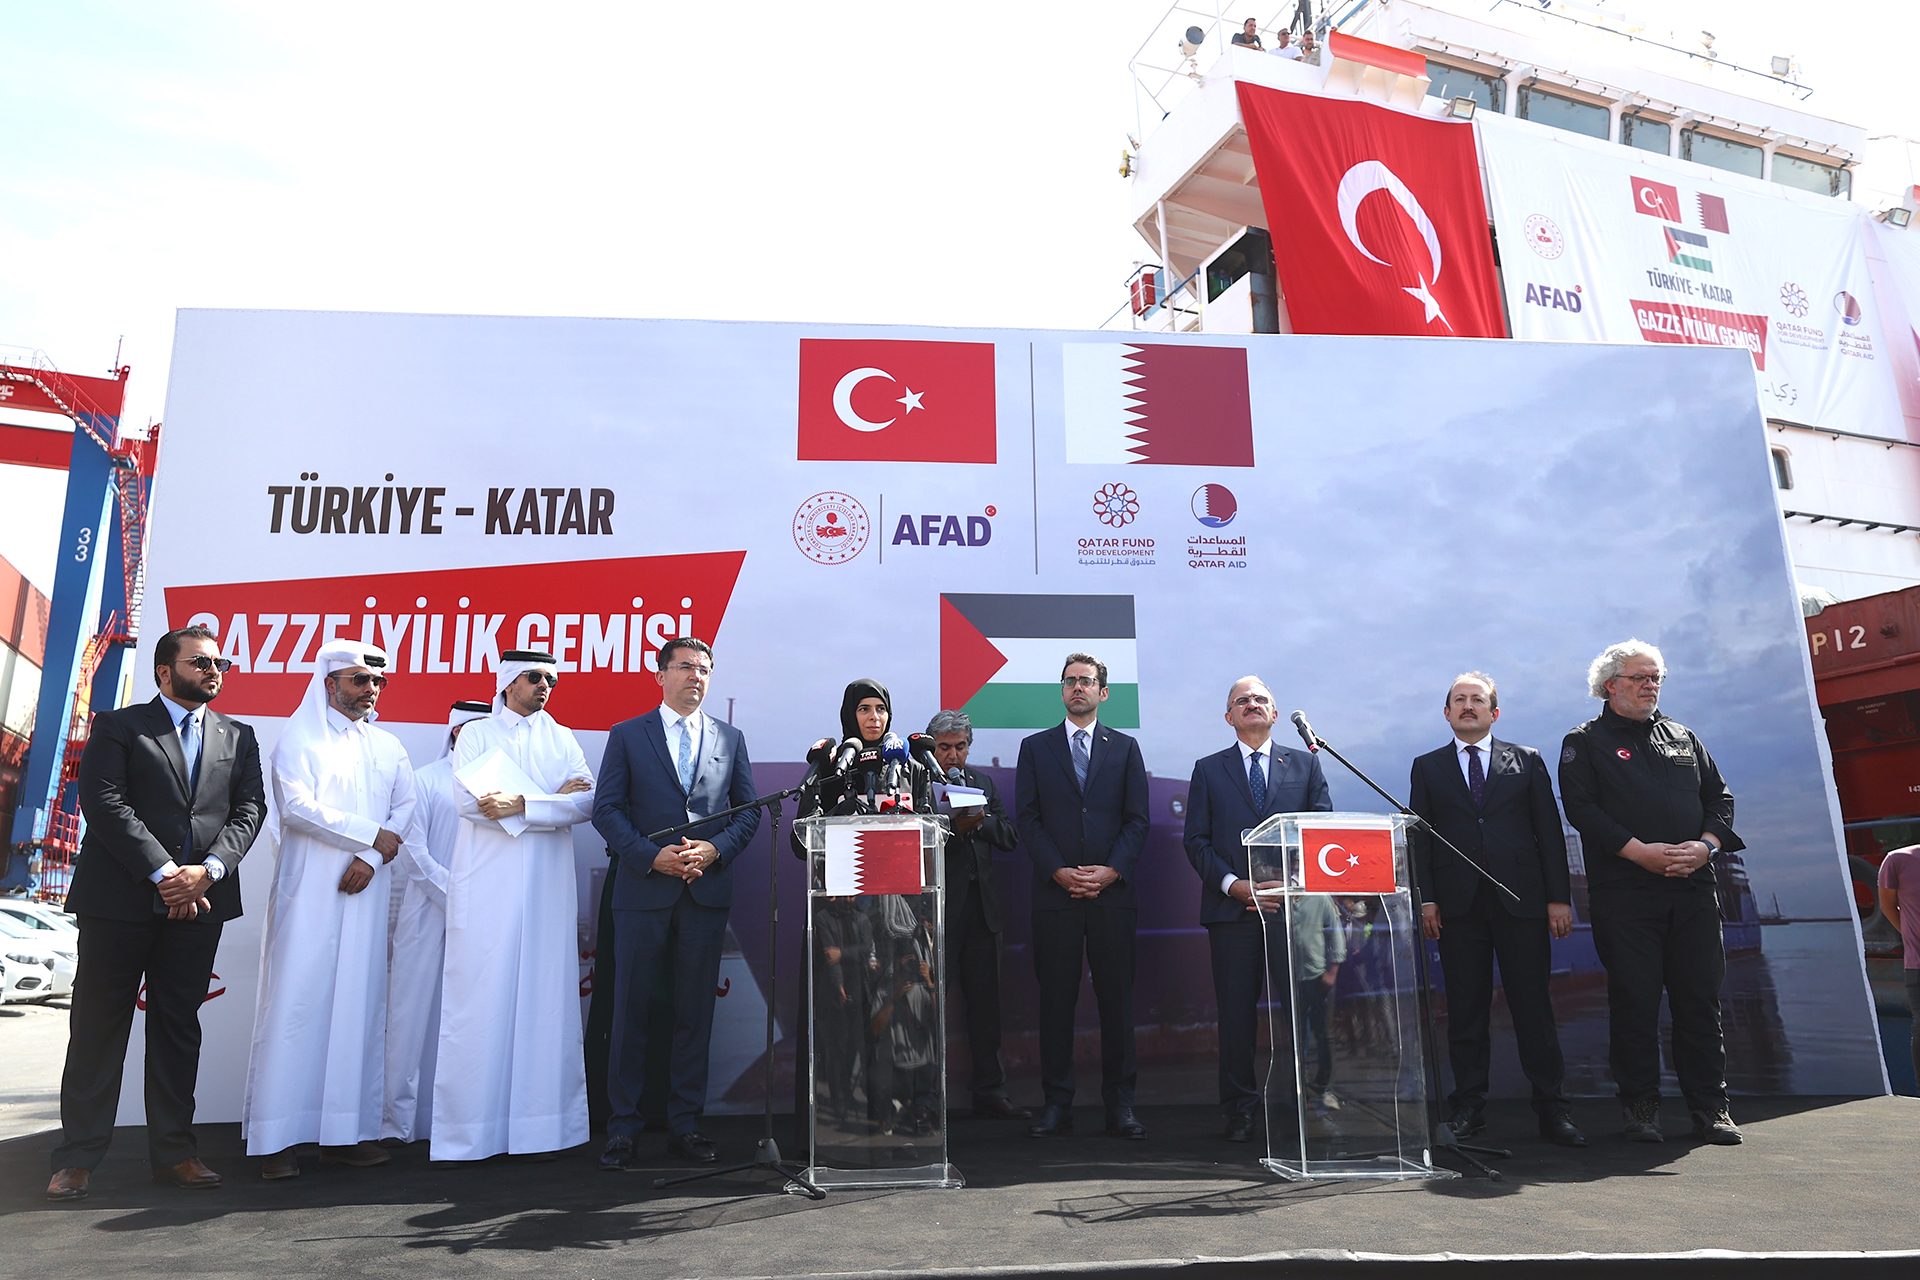 “سفينة الخير” التركية القطرية تنطلق من مرسين إلى العريش | سياسة – البوكس نيوز